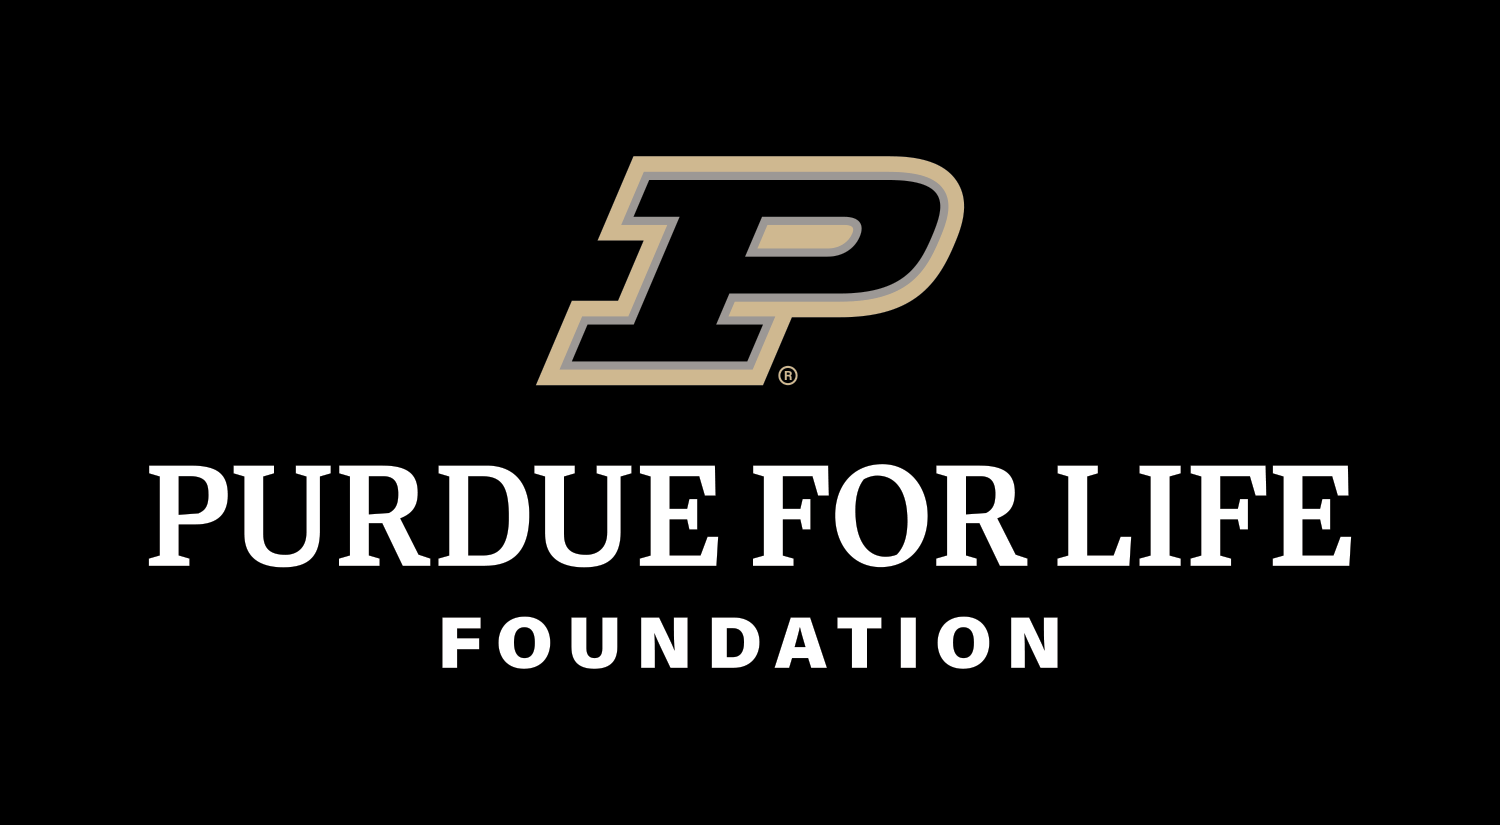 Purdue for Life logo